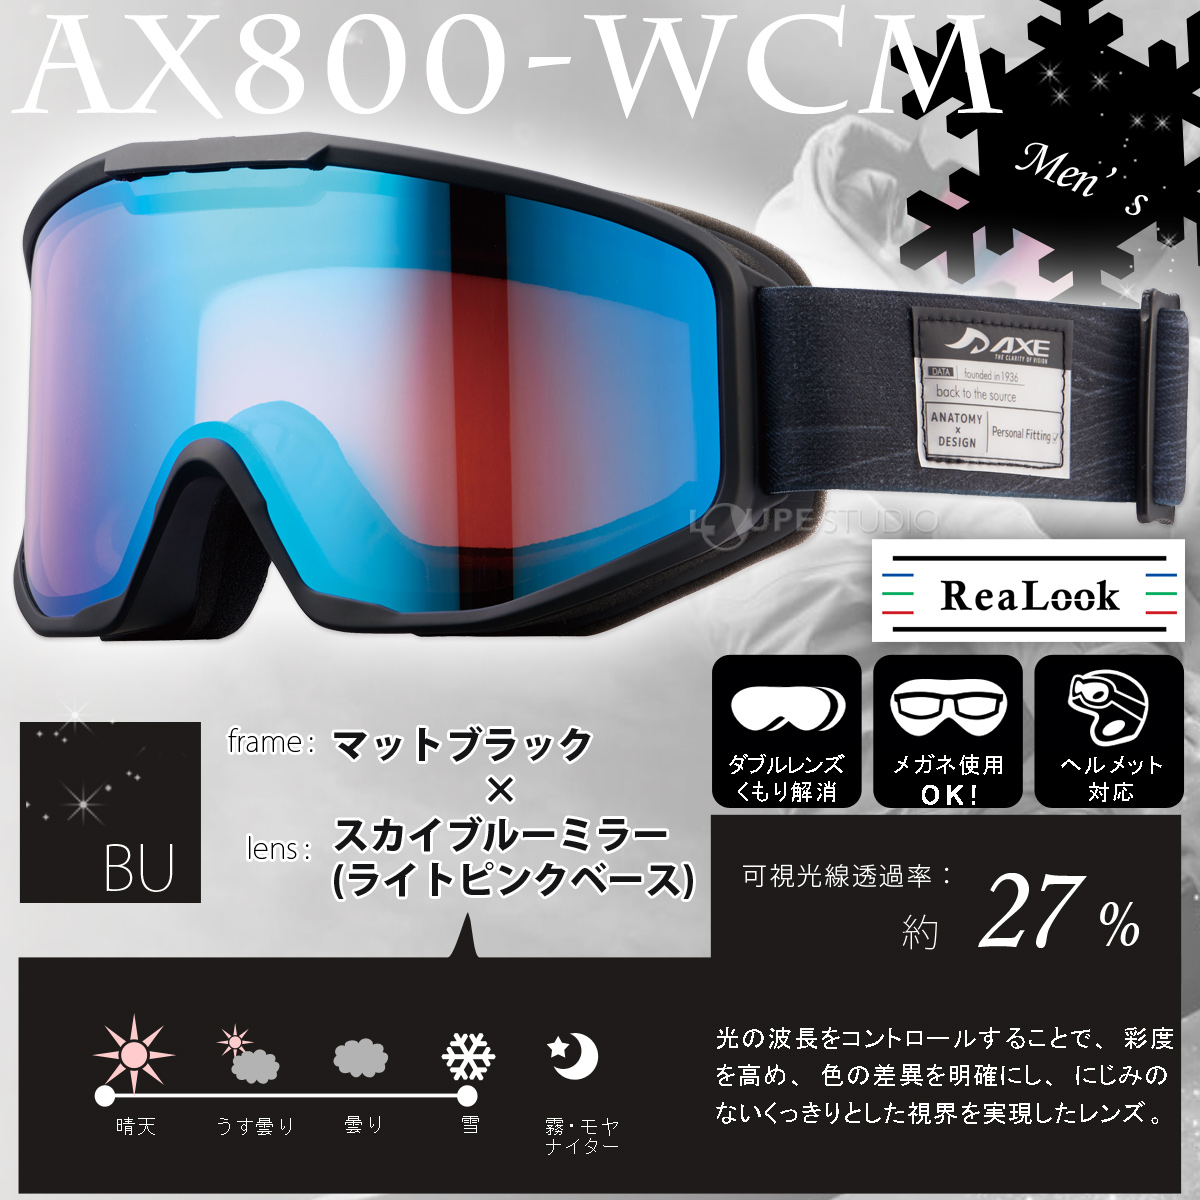 ゴーグル 眼鏡対応 ダブルレンズ 曇り止め AX800-WCM スキー 